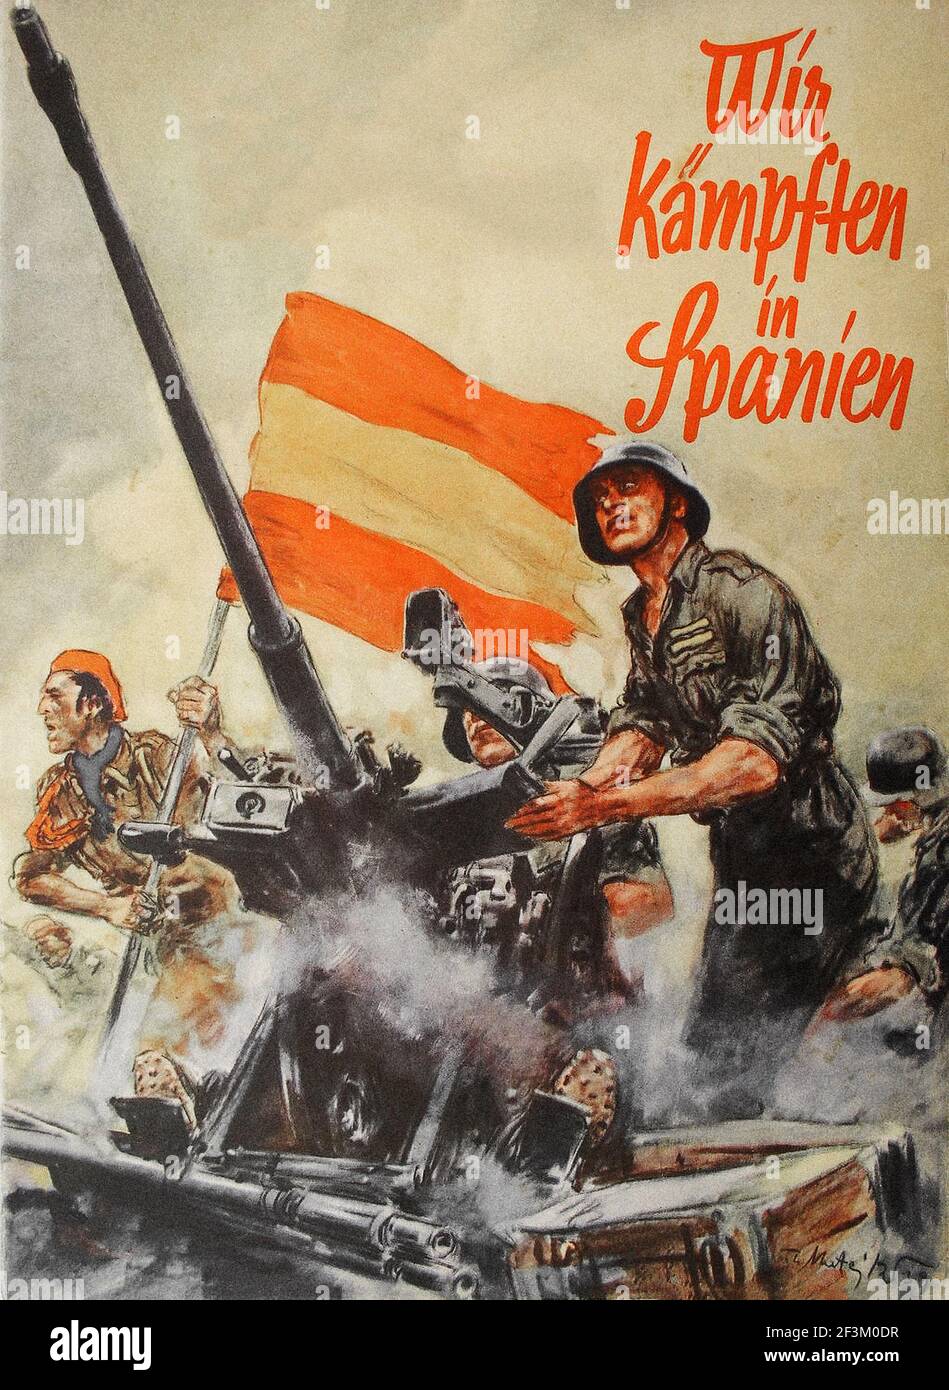 Affiche de propagande allemande de la guerre civile en Espagne. années 1930 Banque D'Images